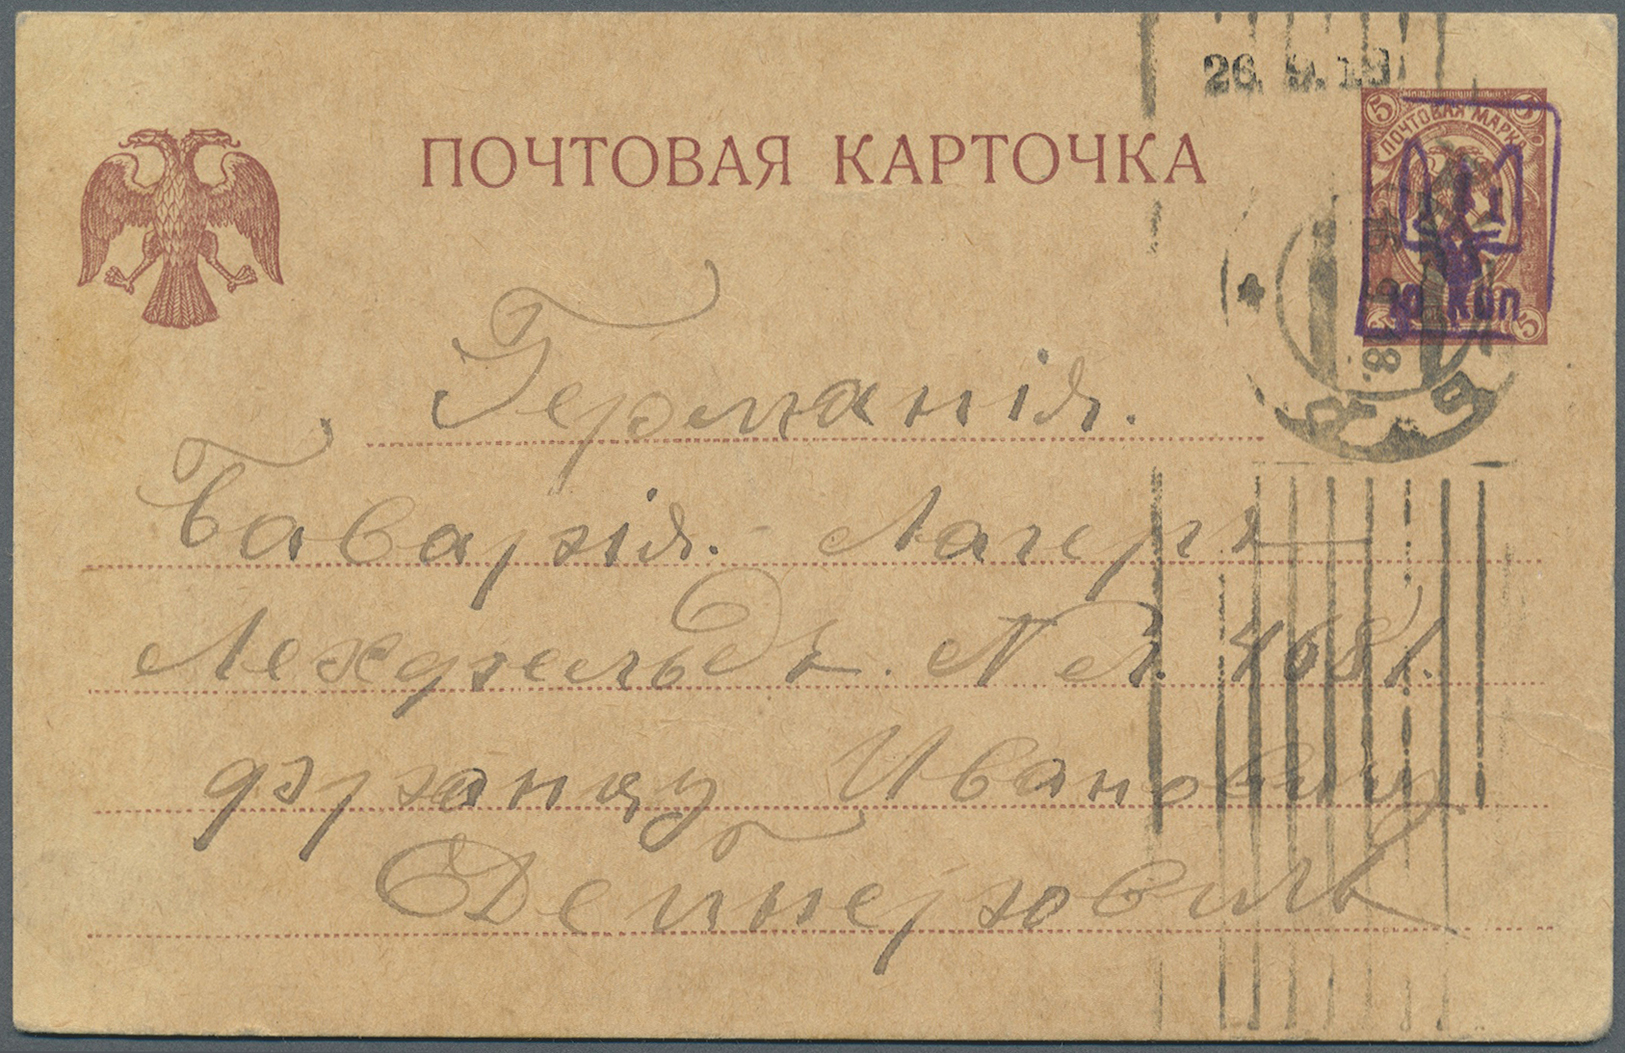 GA Ukraine: 1918, 26.9., 10 Kop. A. 5 K. Braun GA-Kte. M. Aufdr. In Viol. (nicht So Katalogisiert) Aus Kiew Ins K - Ukraine